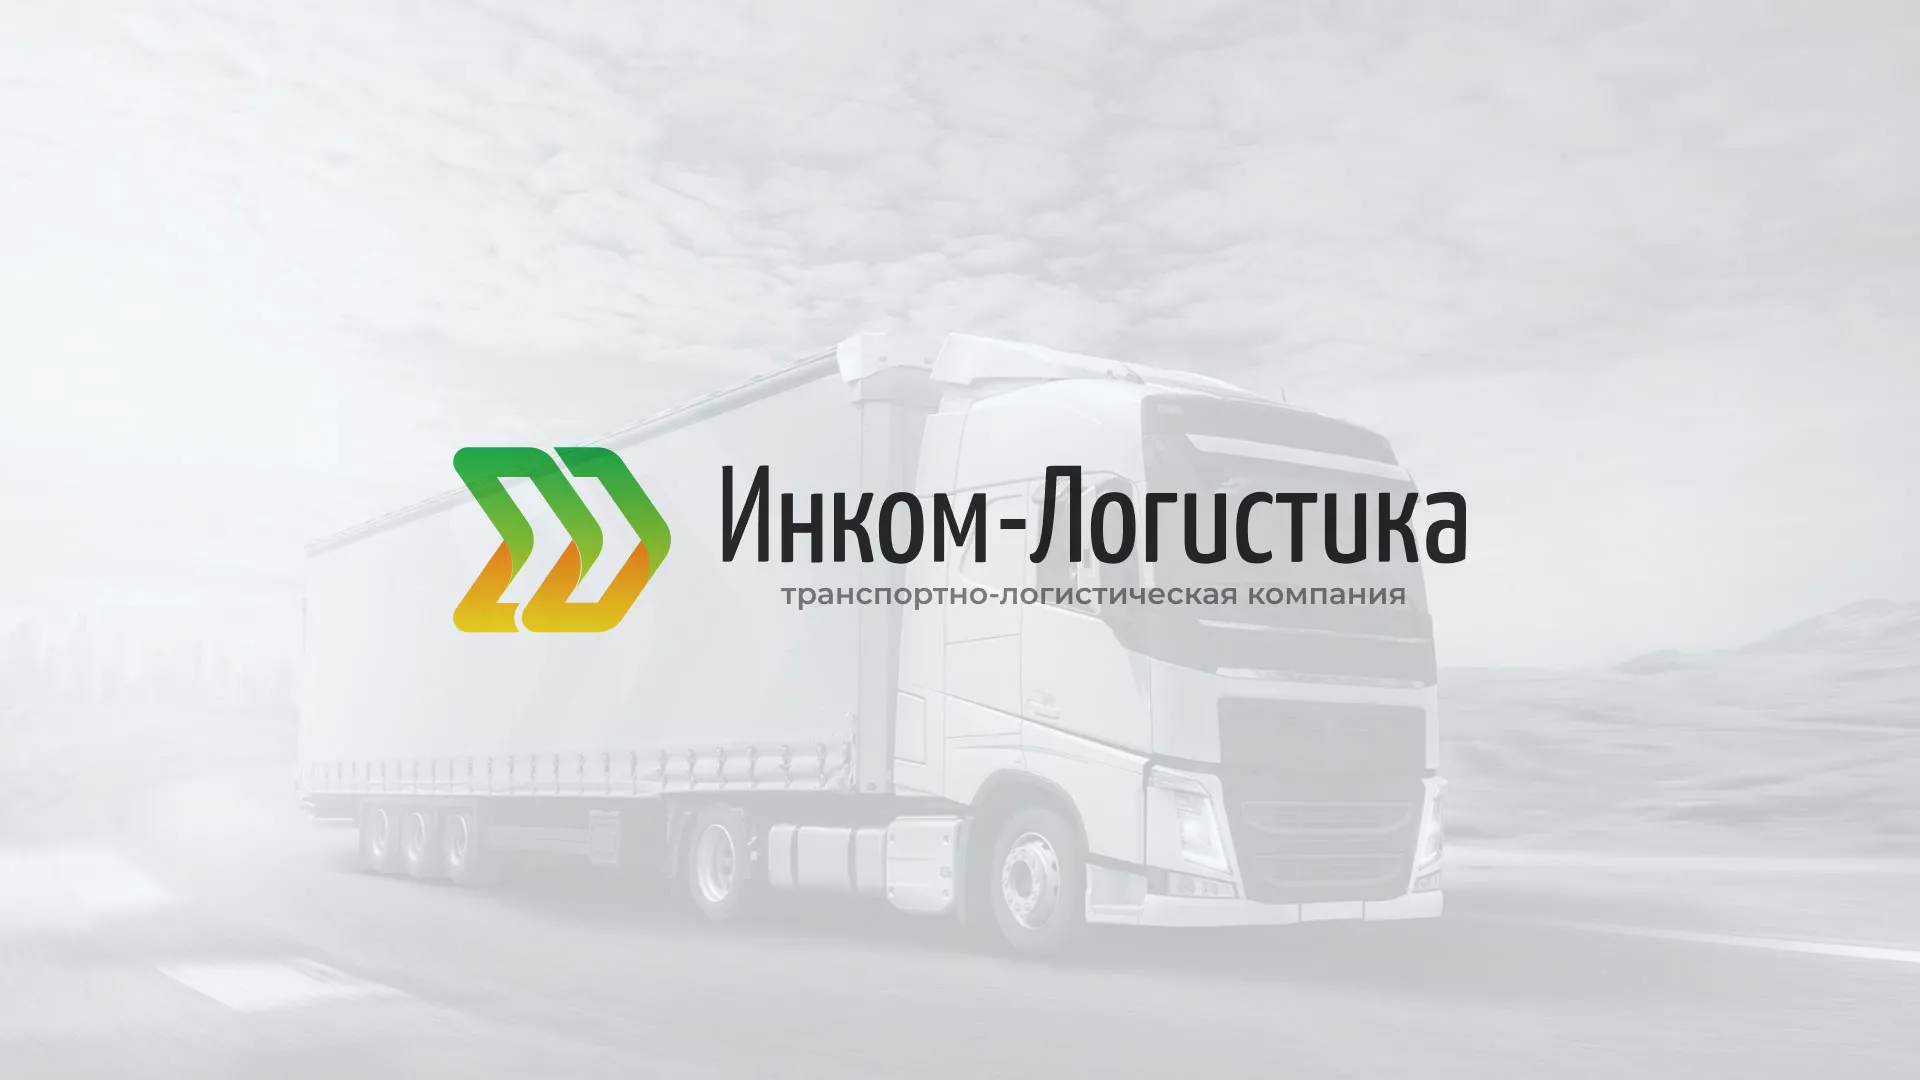 Разработка логотипа и сайта компании «Инком-Логистика» в Зуевке